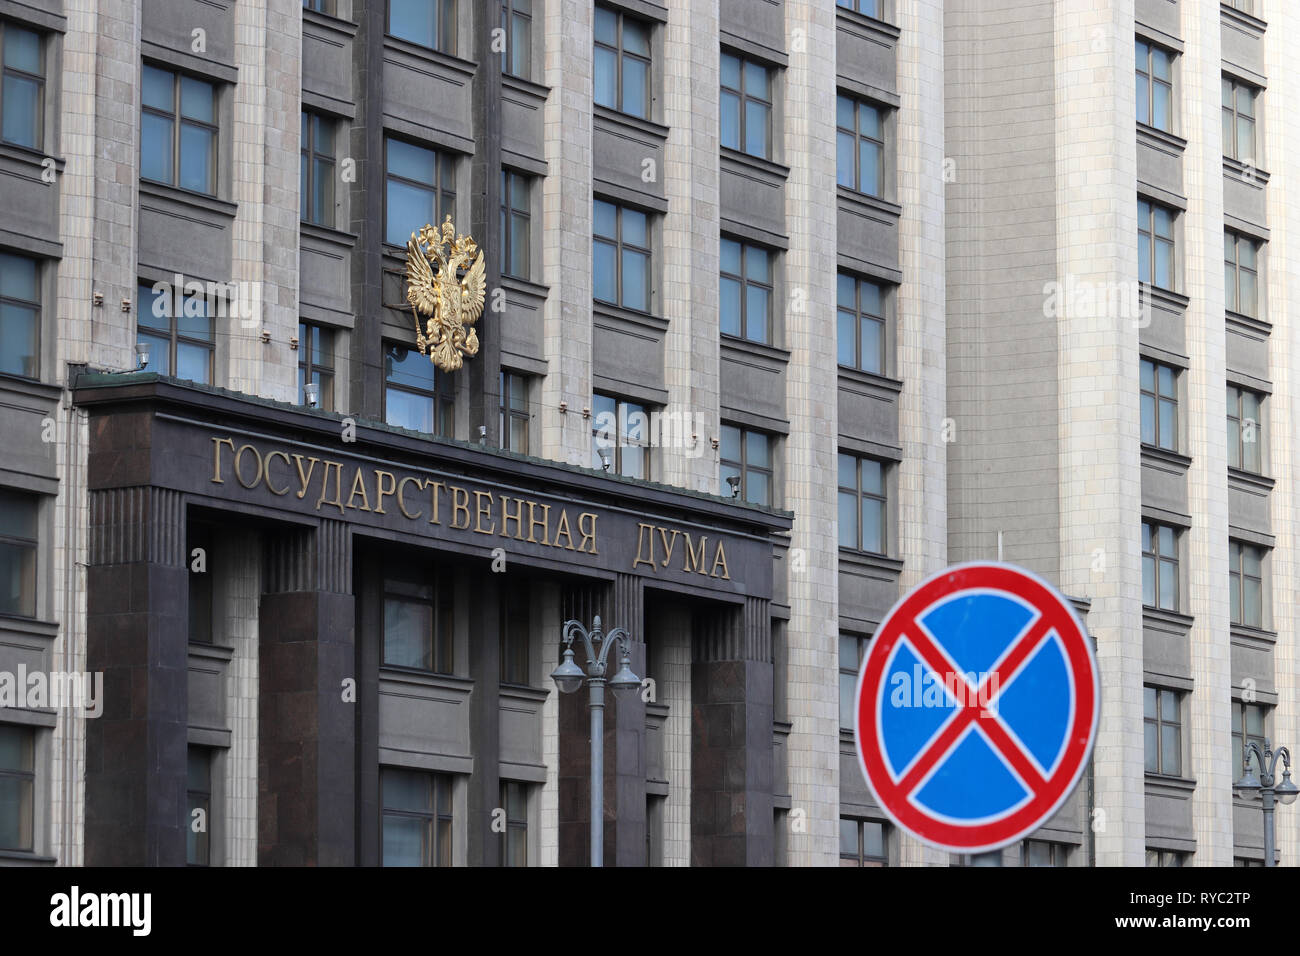 Facciata del parlamento russo, edificio a Mosca con emblema della Russia e di iscrizione "tate Duma'. Arresto e parcheggio è proibito cartello stradale Foto Stock